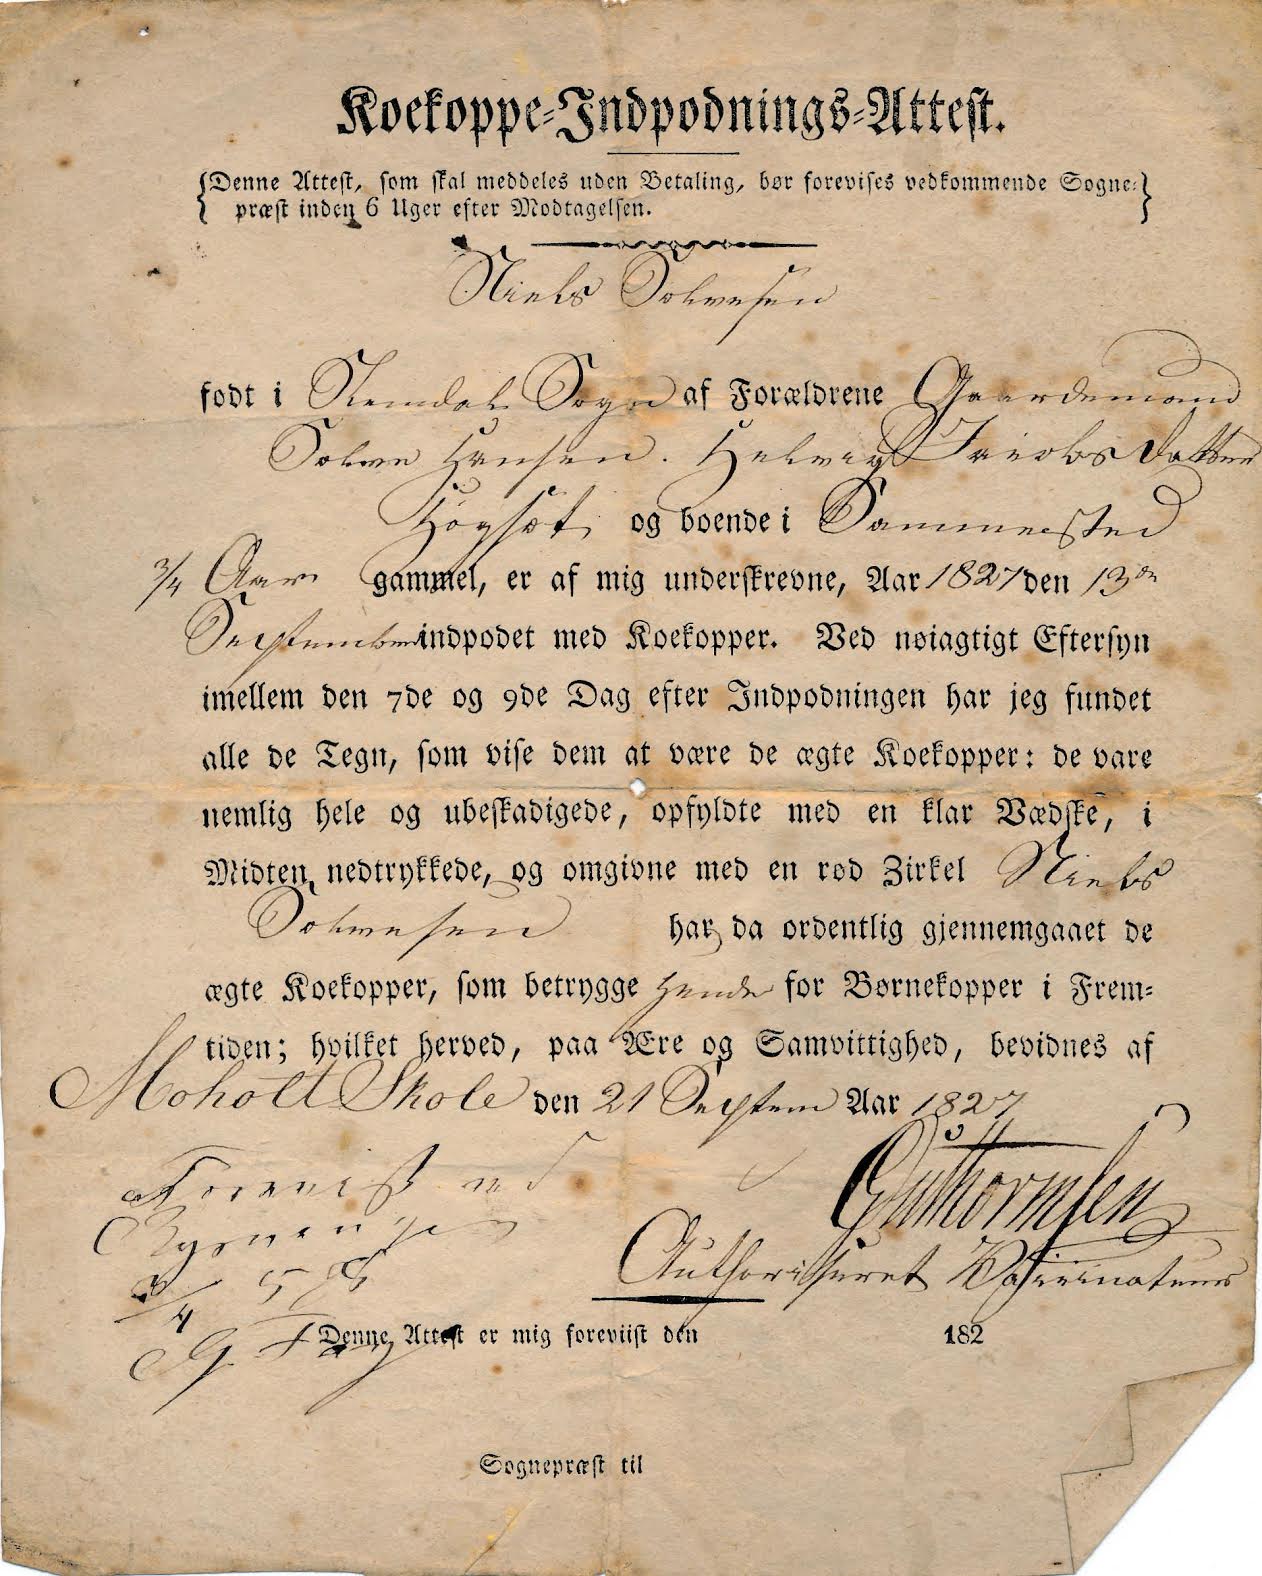 Vaccine certificate from 1827, smallpox vaccine. Public domain, via Wikimedia Commons